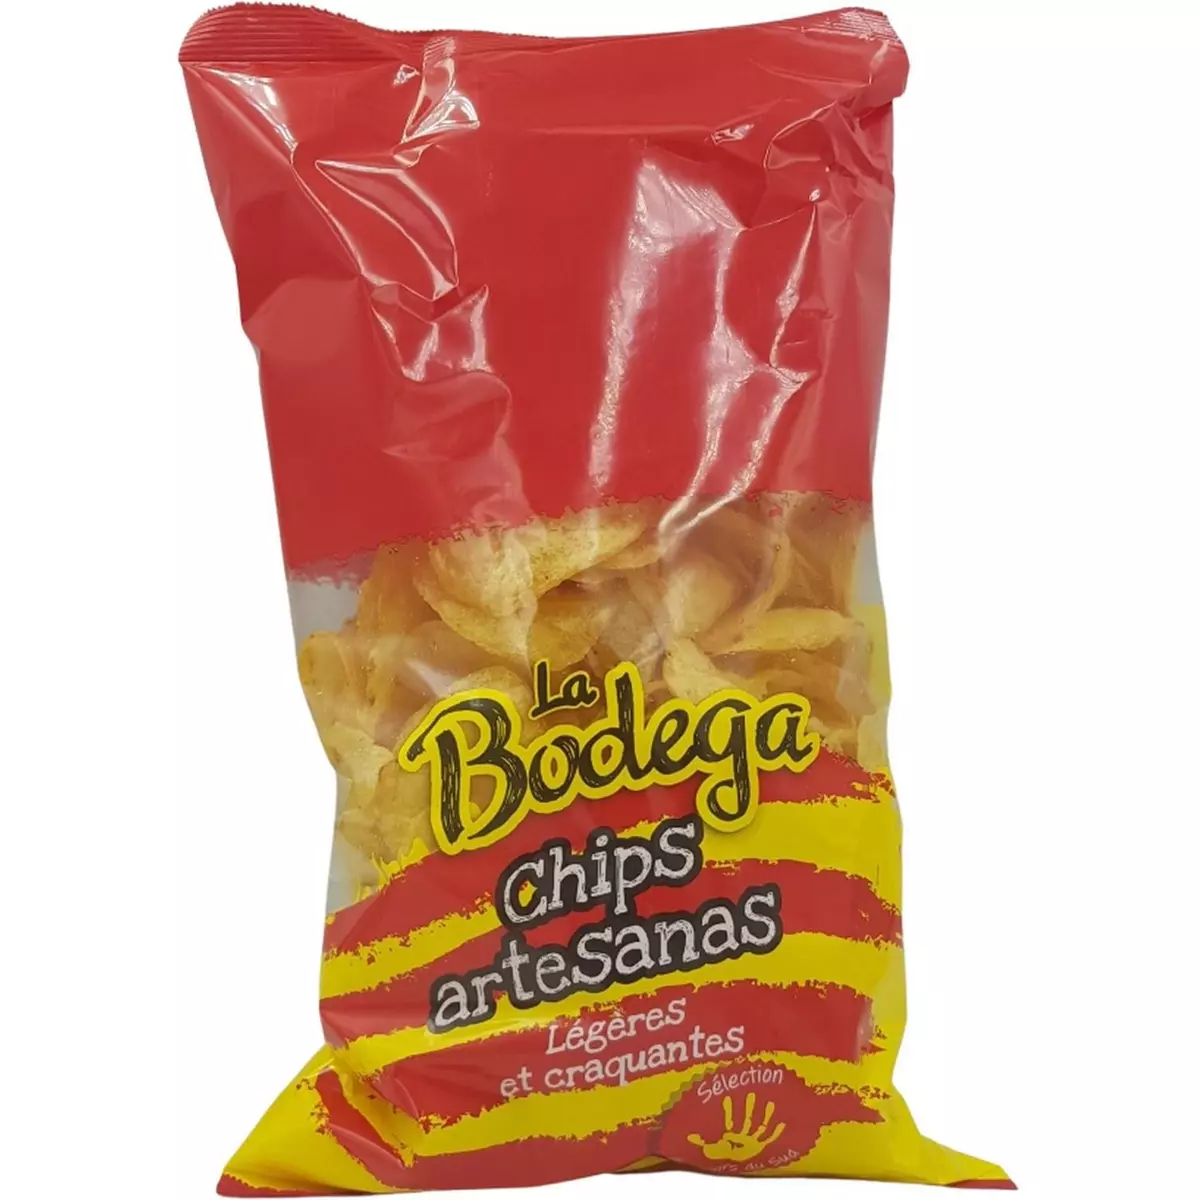 LA BODEGA Chips légères et craquantes 250g